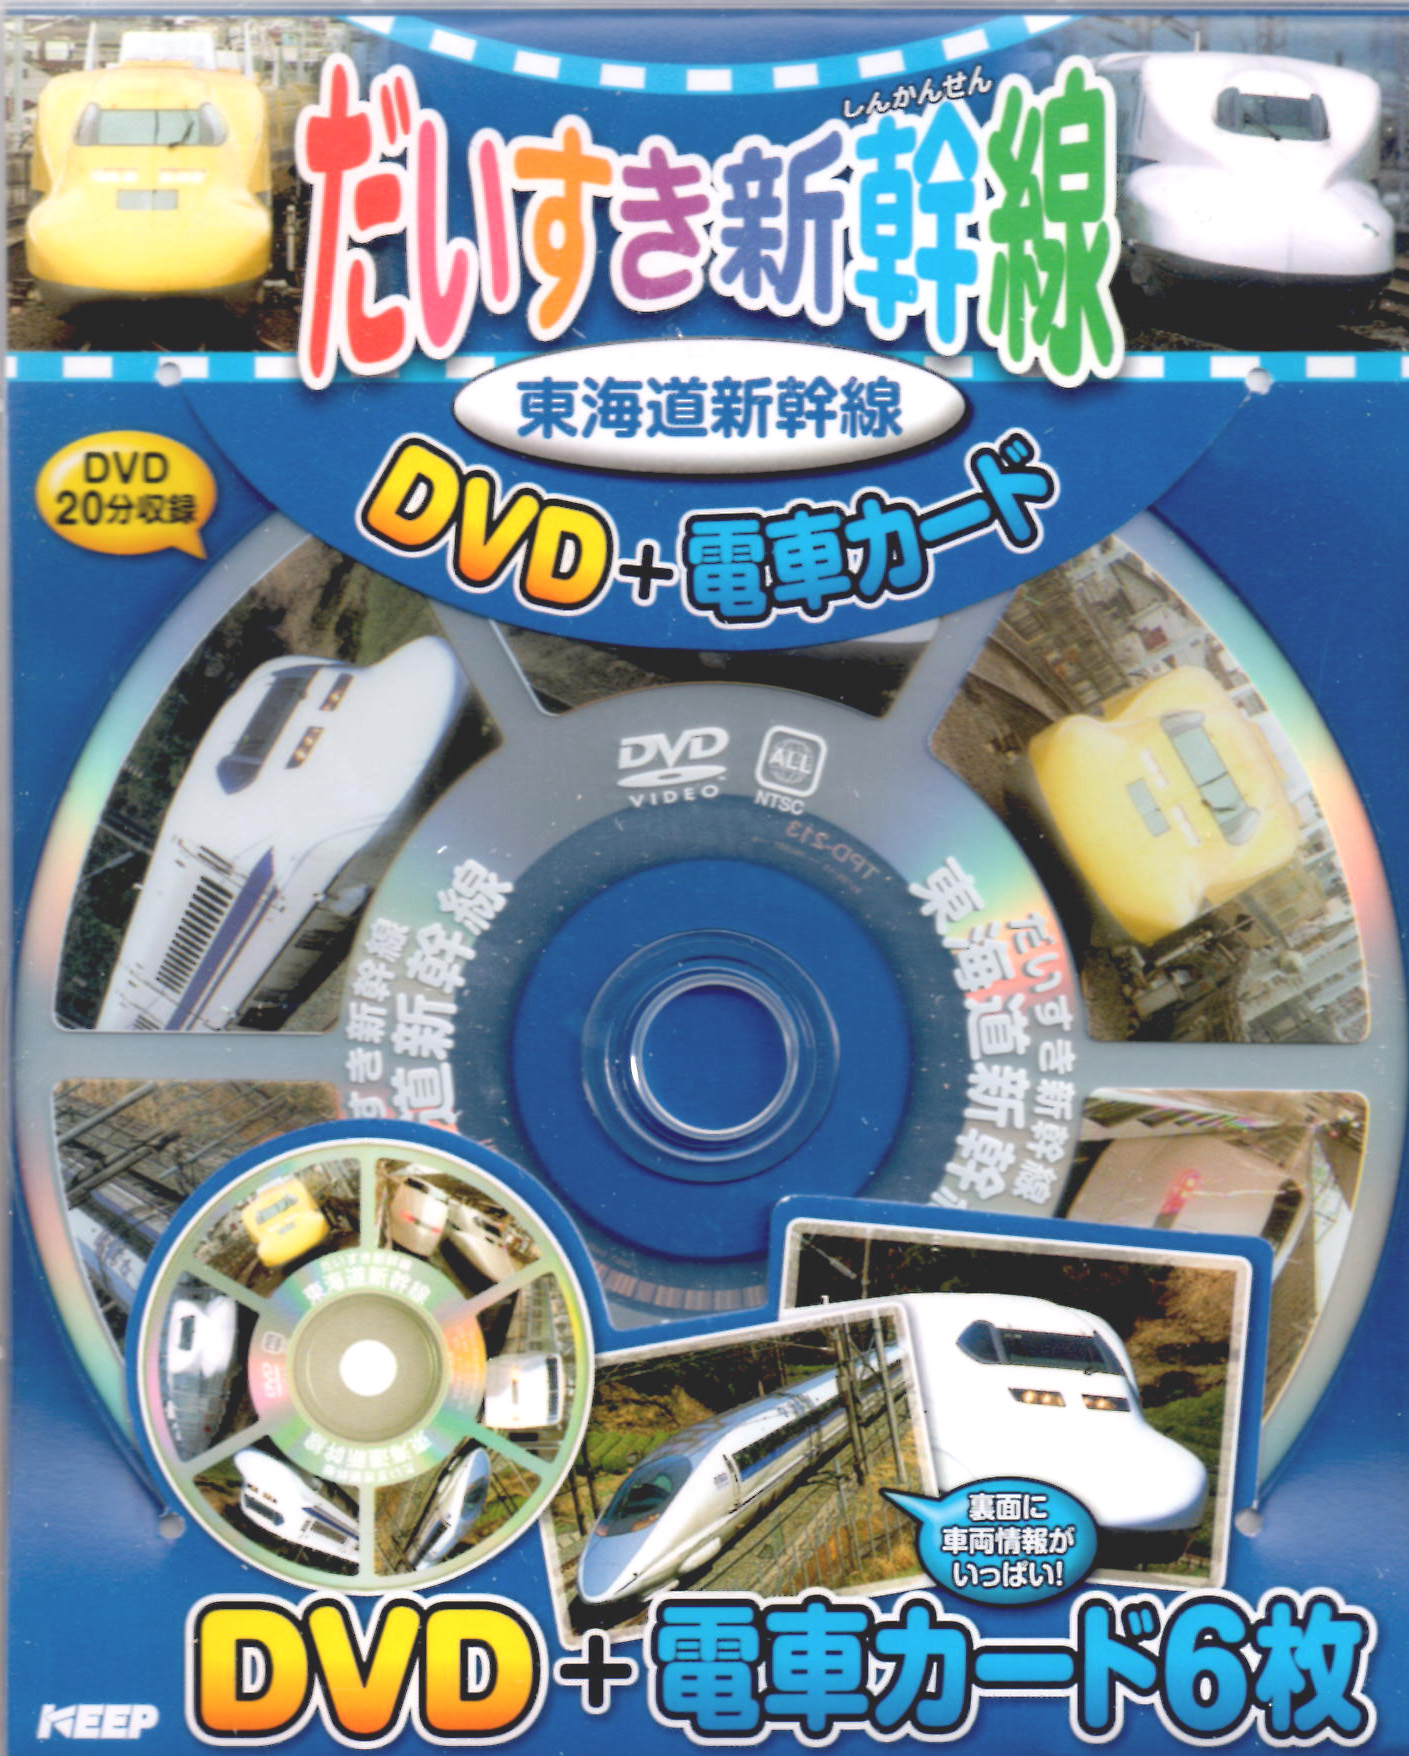 だいすき新幹線 東海道新幹線 (DVD+電車カード)